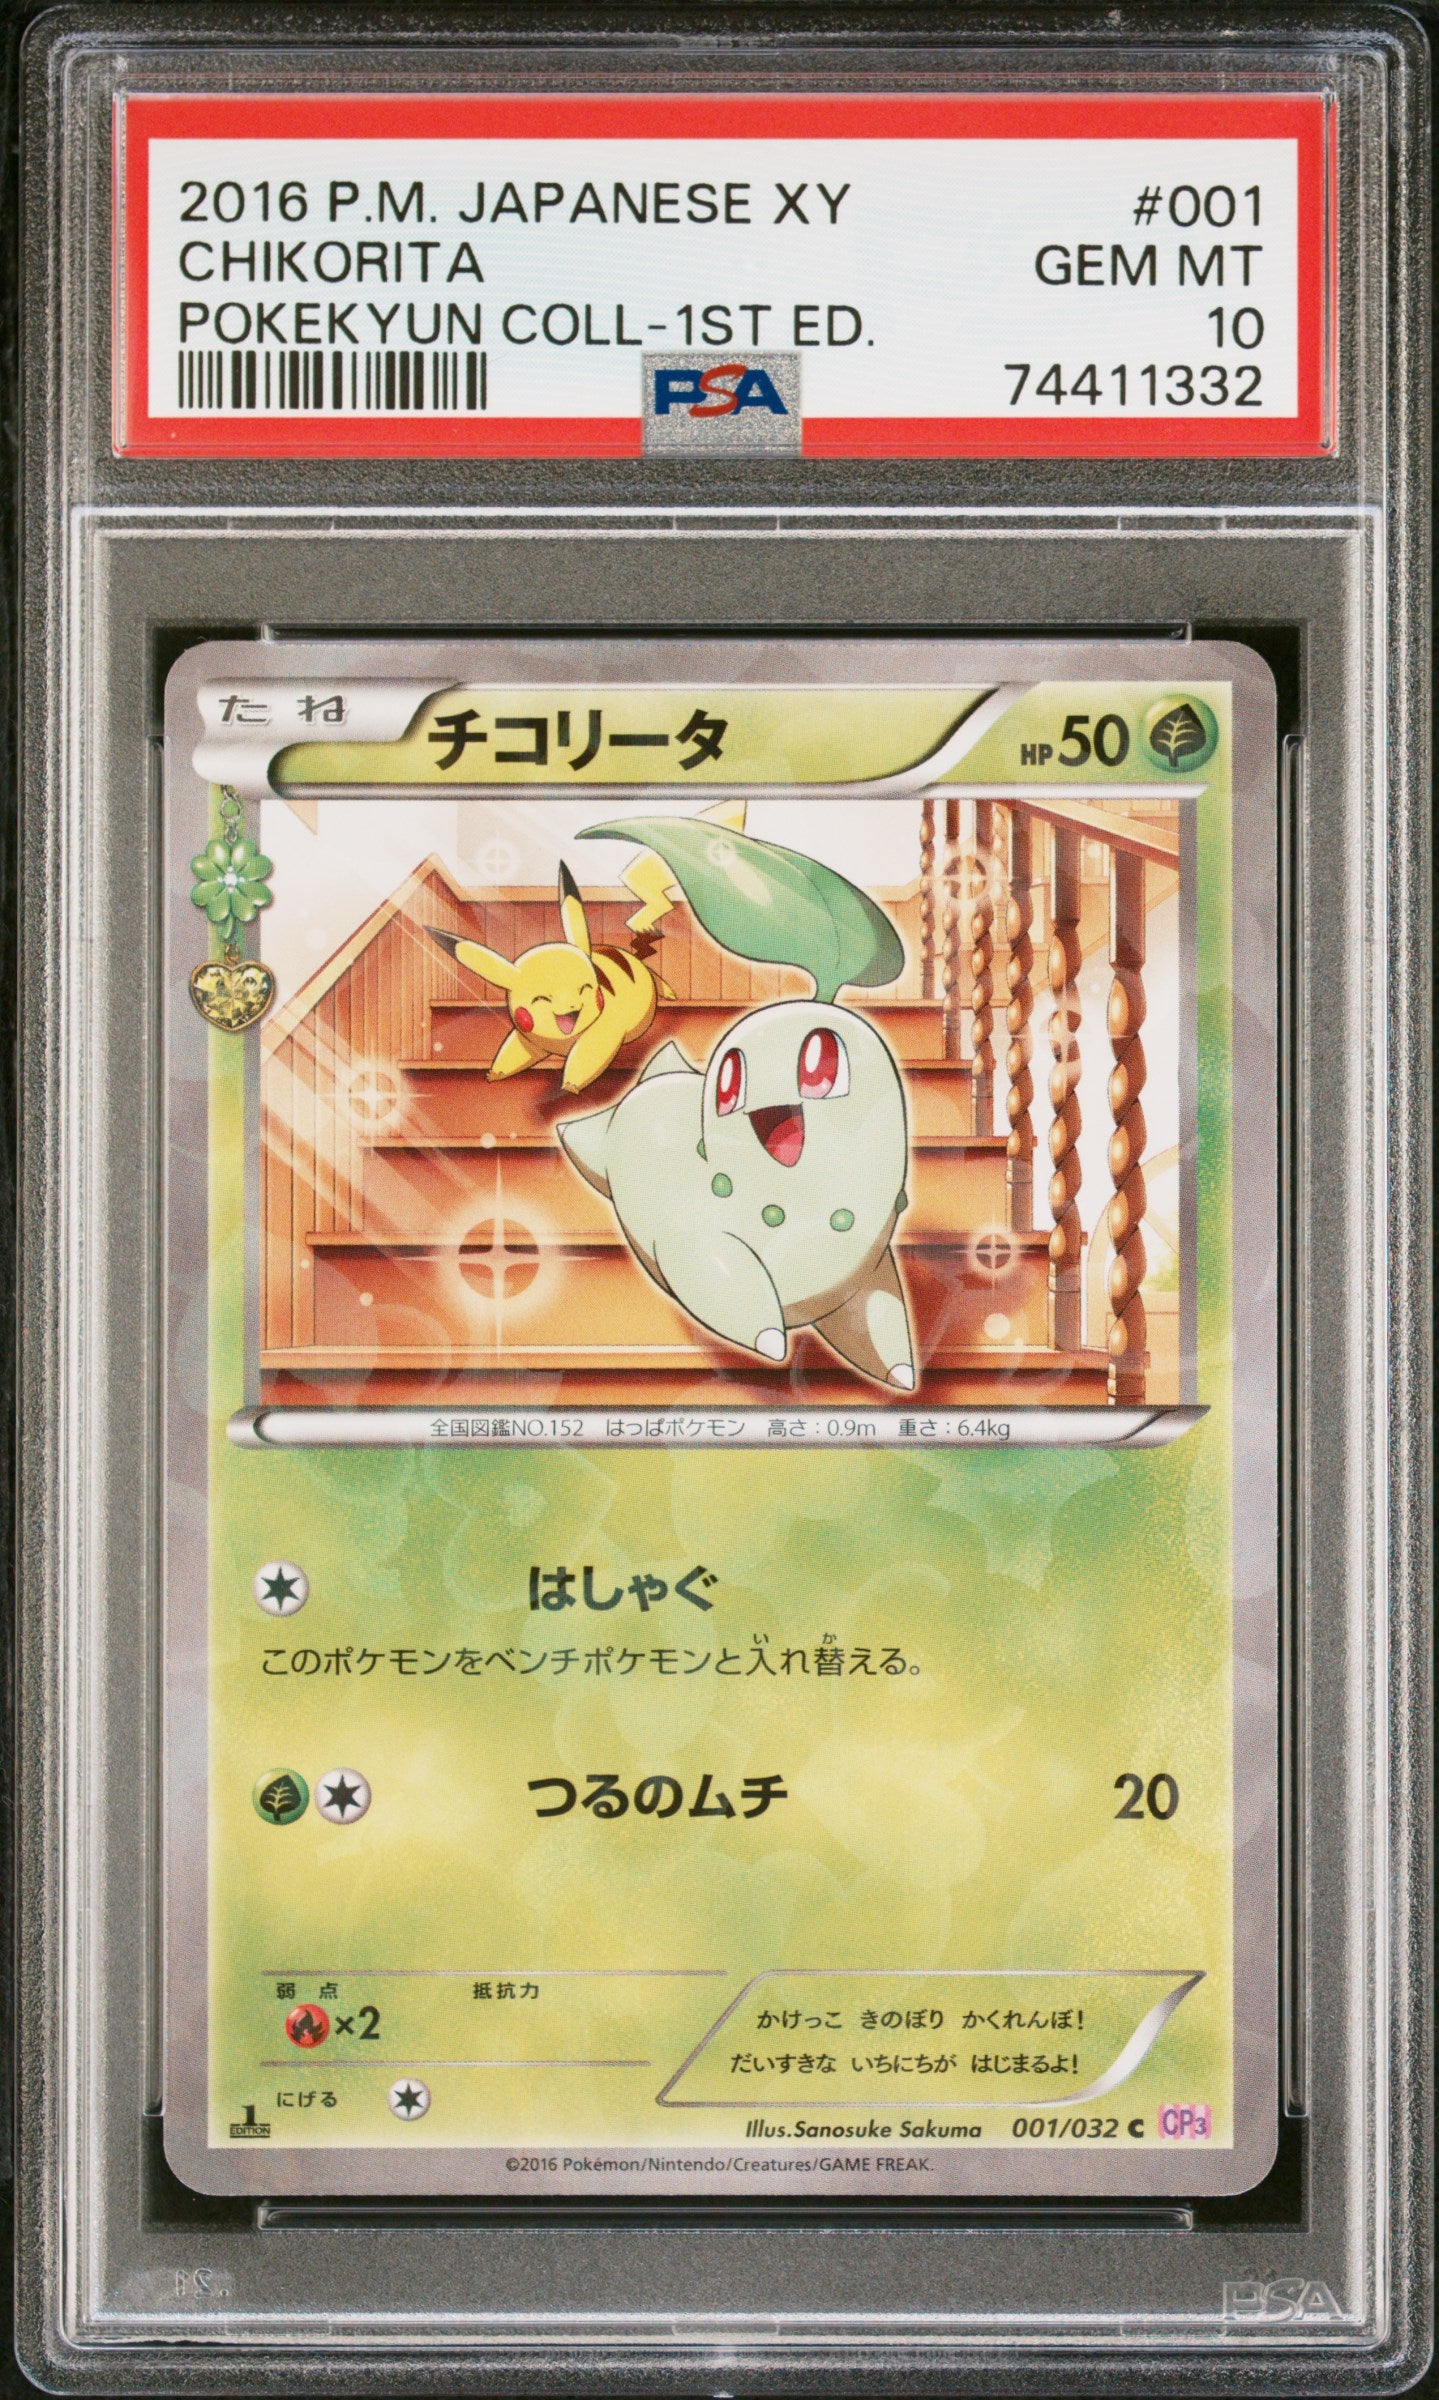 PSA 10 - Chikorita 001/032 XY CP3 Pokekyun Collection 1st Edition - Pokemon